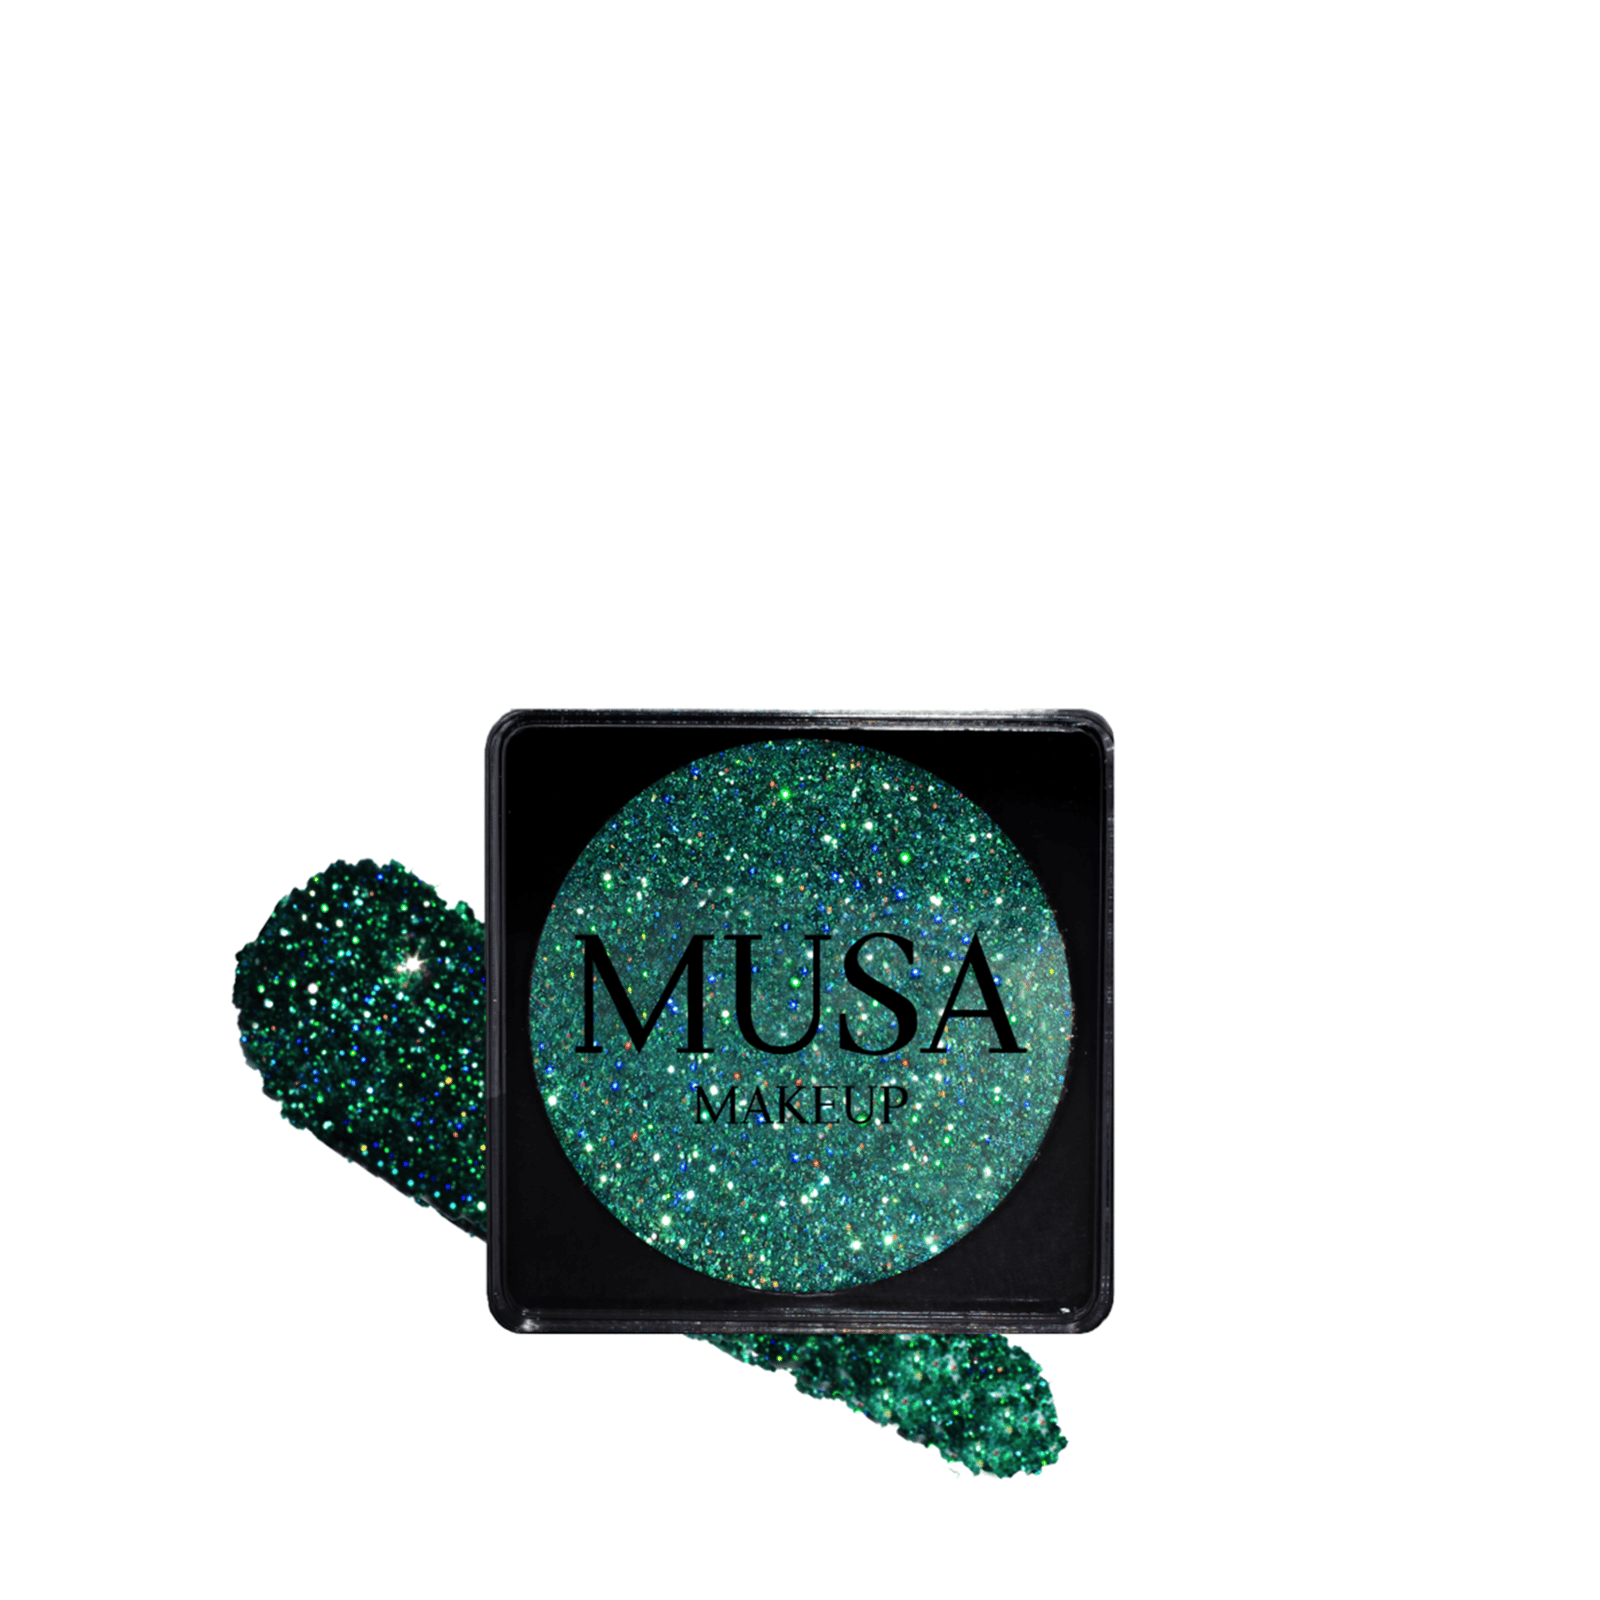 MUSA Makeup Creamy Glitter Seirina 4g